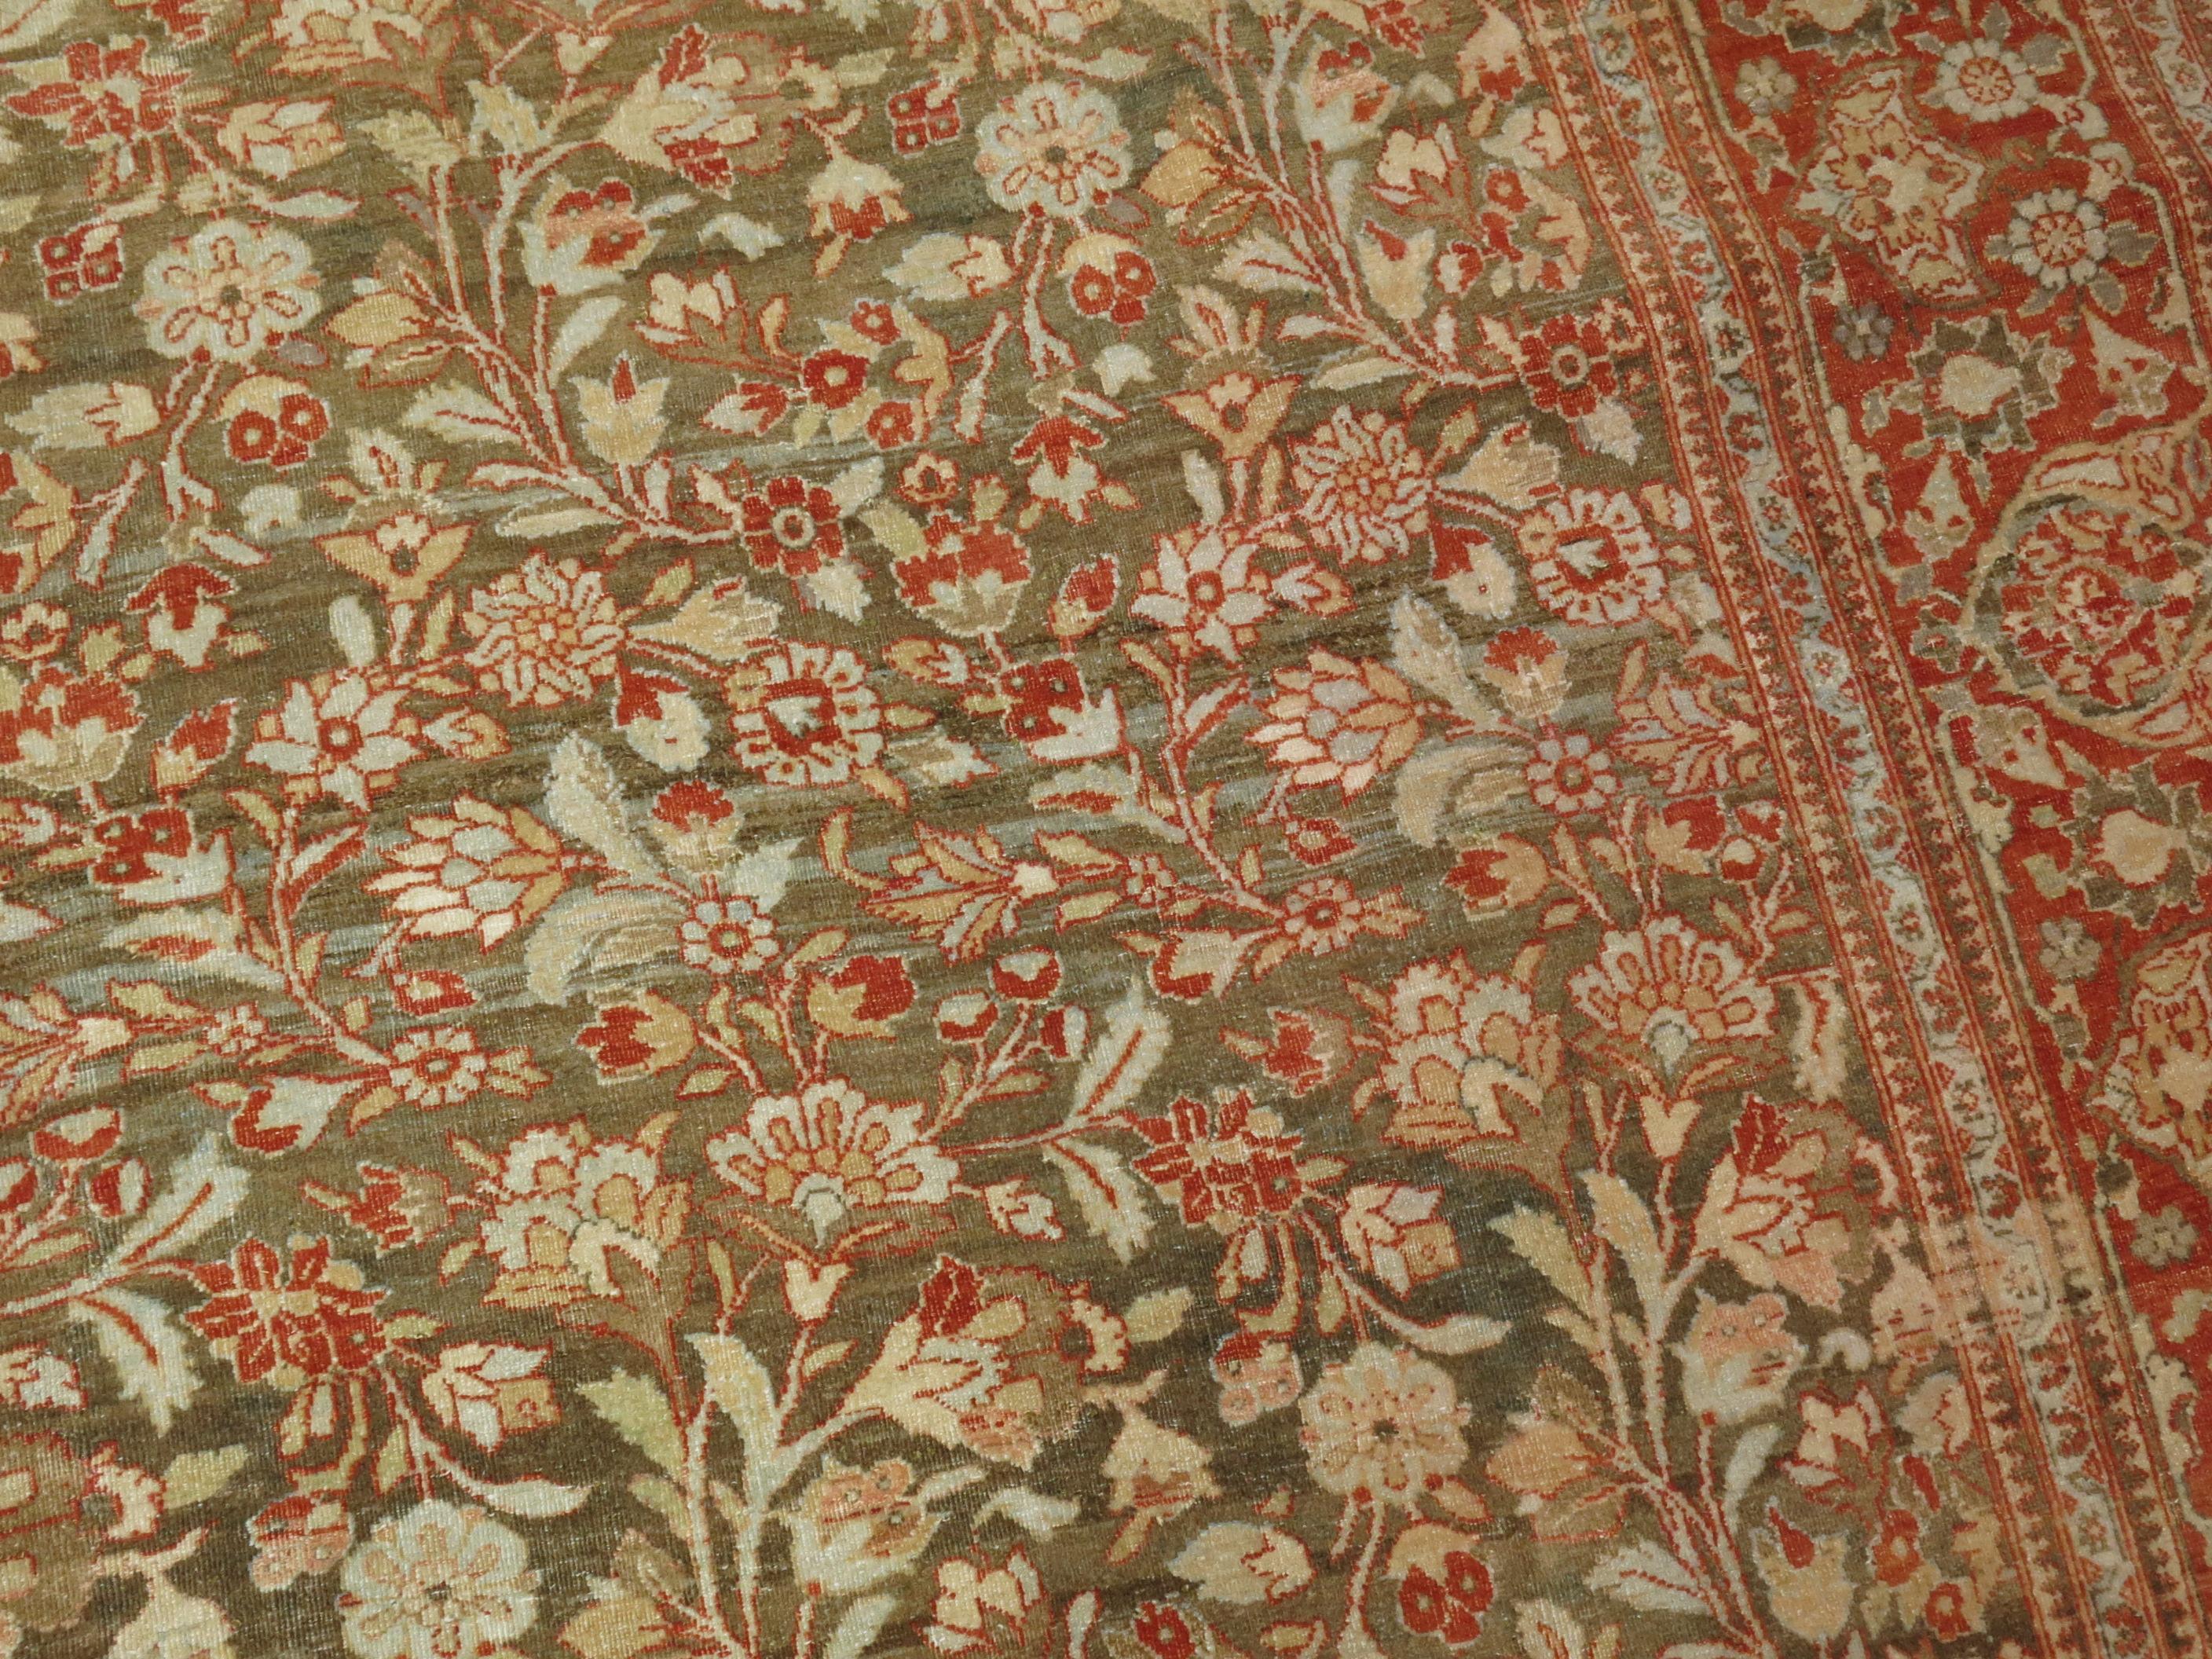 Tapis Persan Tabriz du début du 20e siècle avec un élégant motif floral sur un fond brun abrasé

Mesures : 8'6'' x 11'5''.